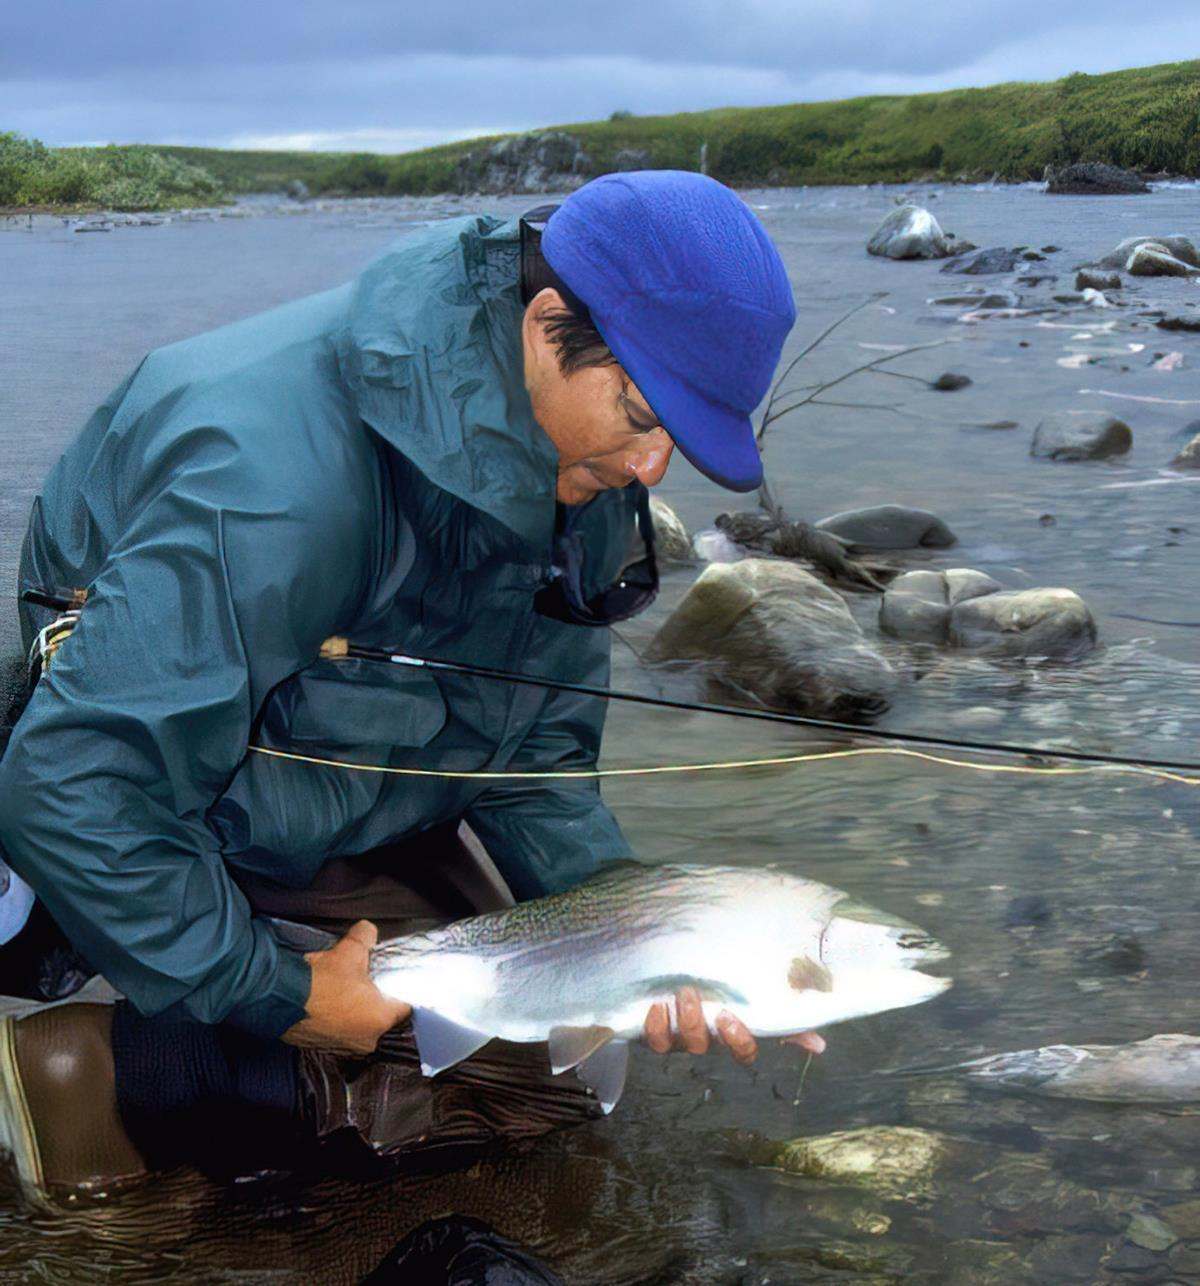 Fishing the Sensational Salmon Spawn, Ethically